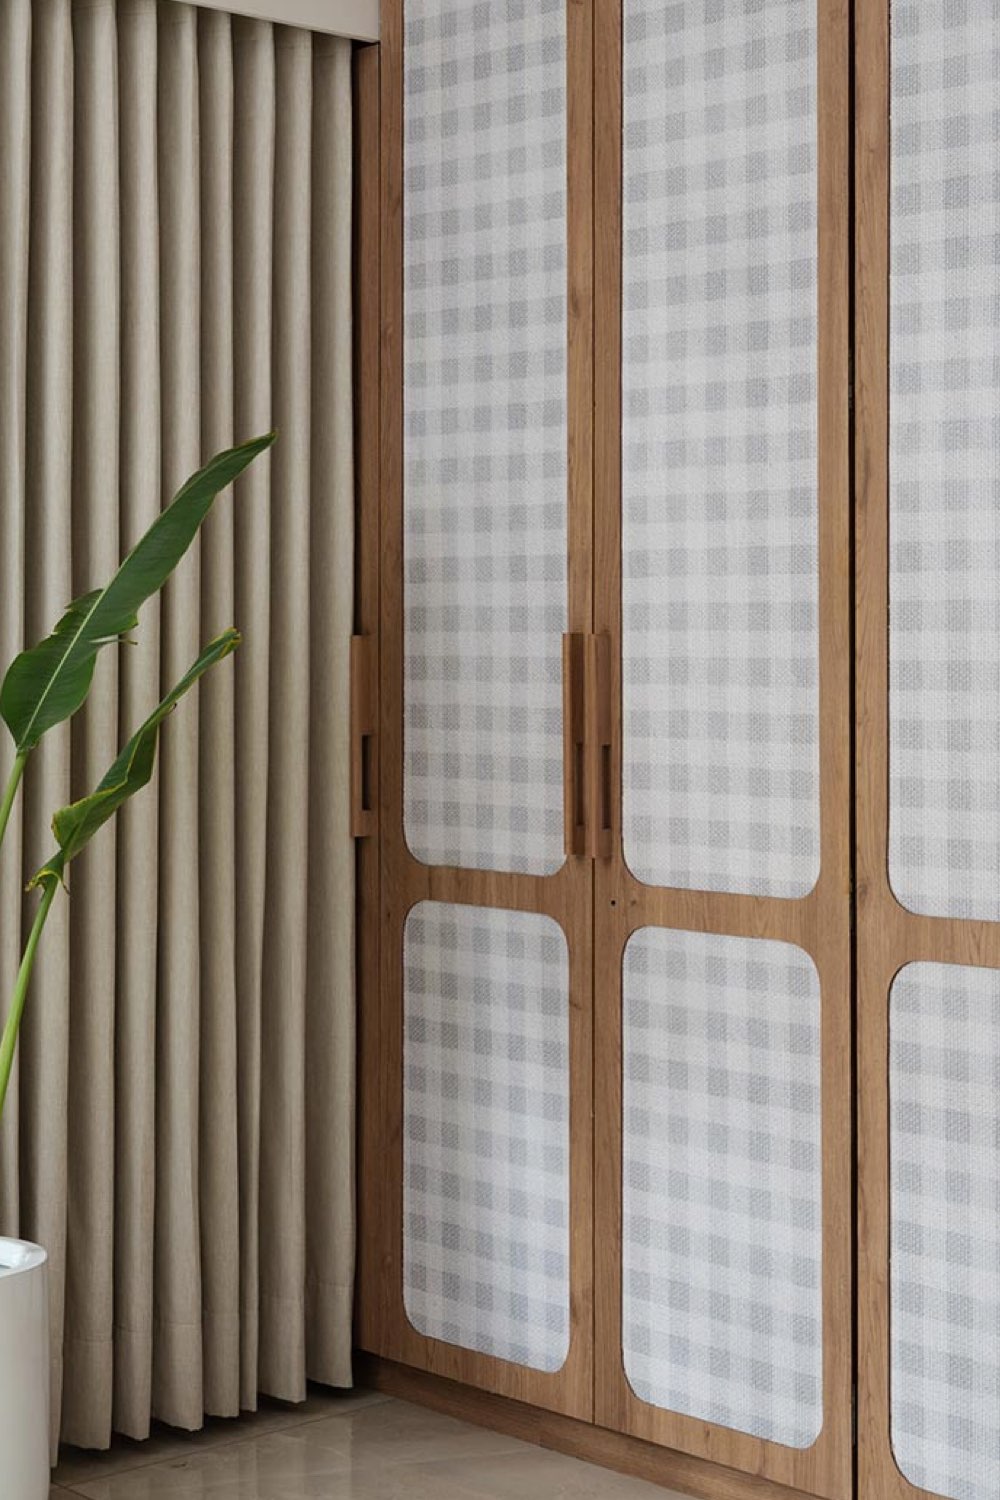 appartement lumineux moderne decor nature meuble sur mesure placard porte intérieure arrondi angle papier peint neutre